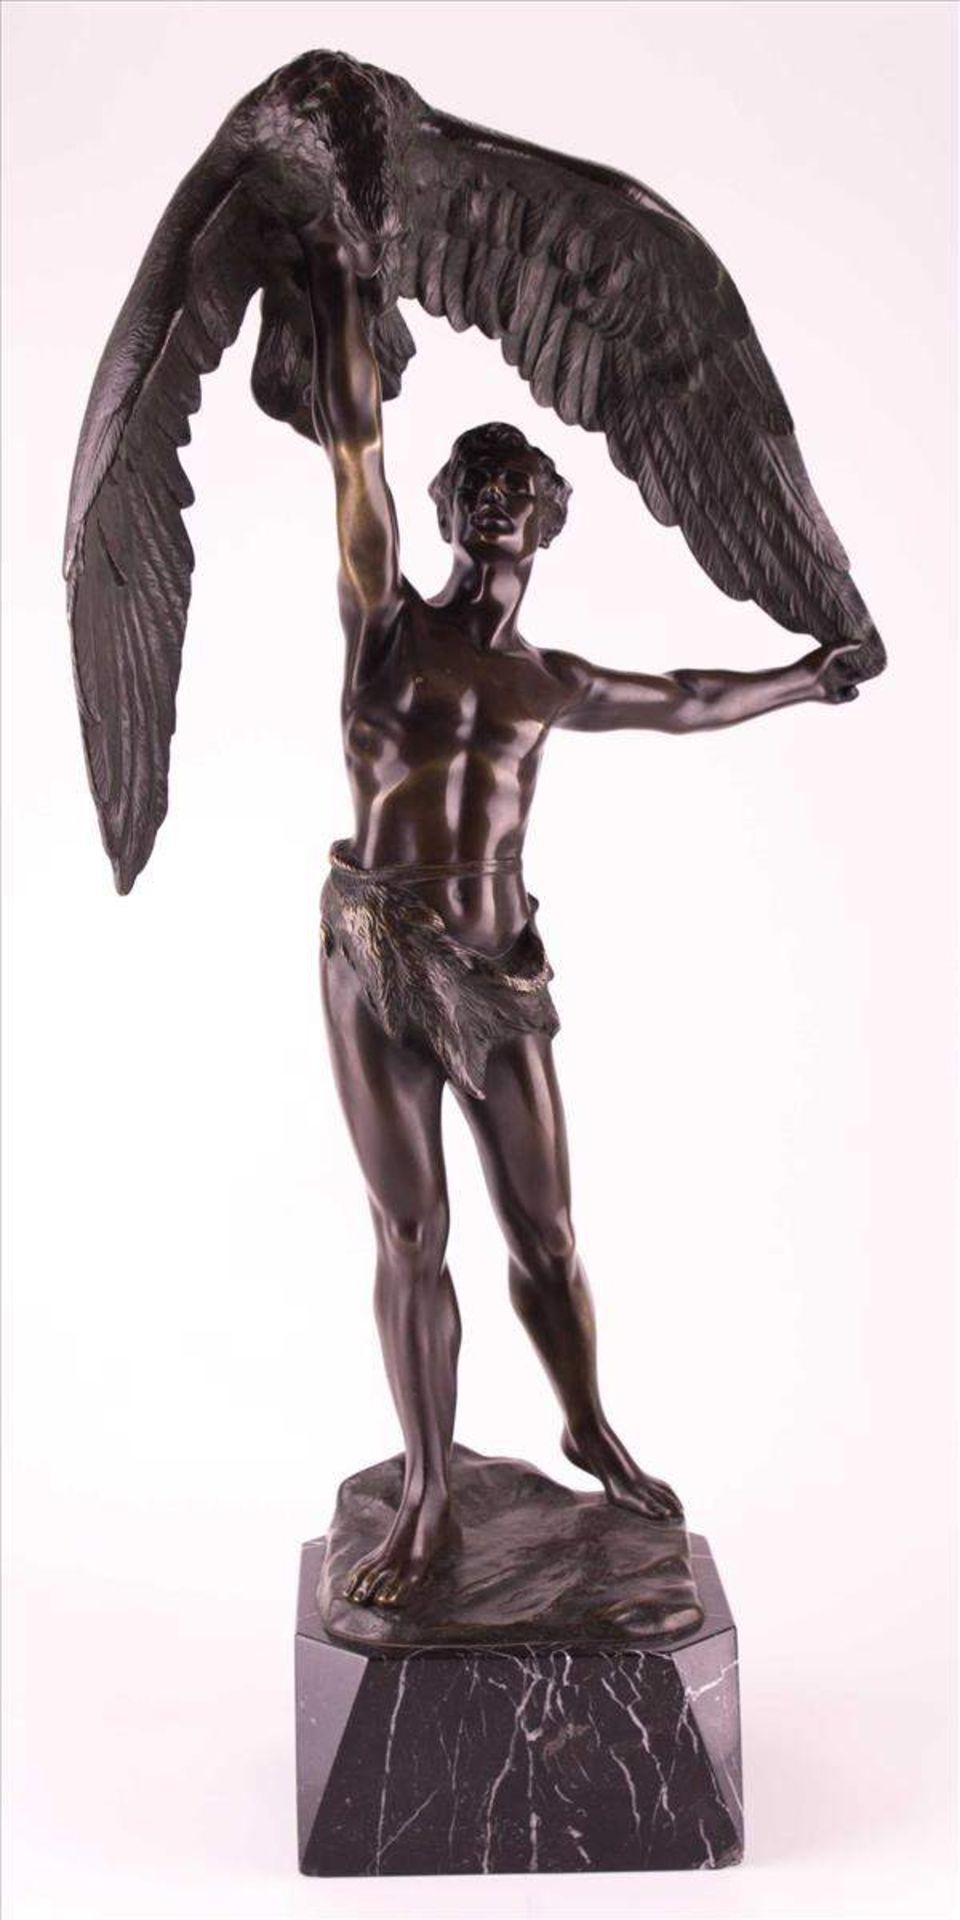 Gotthilf JAEGER (1871-1933)"Ganymed"
Skulptur-Volumen, Bronze, H: ca. 78 cm,
in der Plinthe signiert